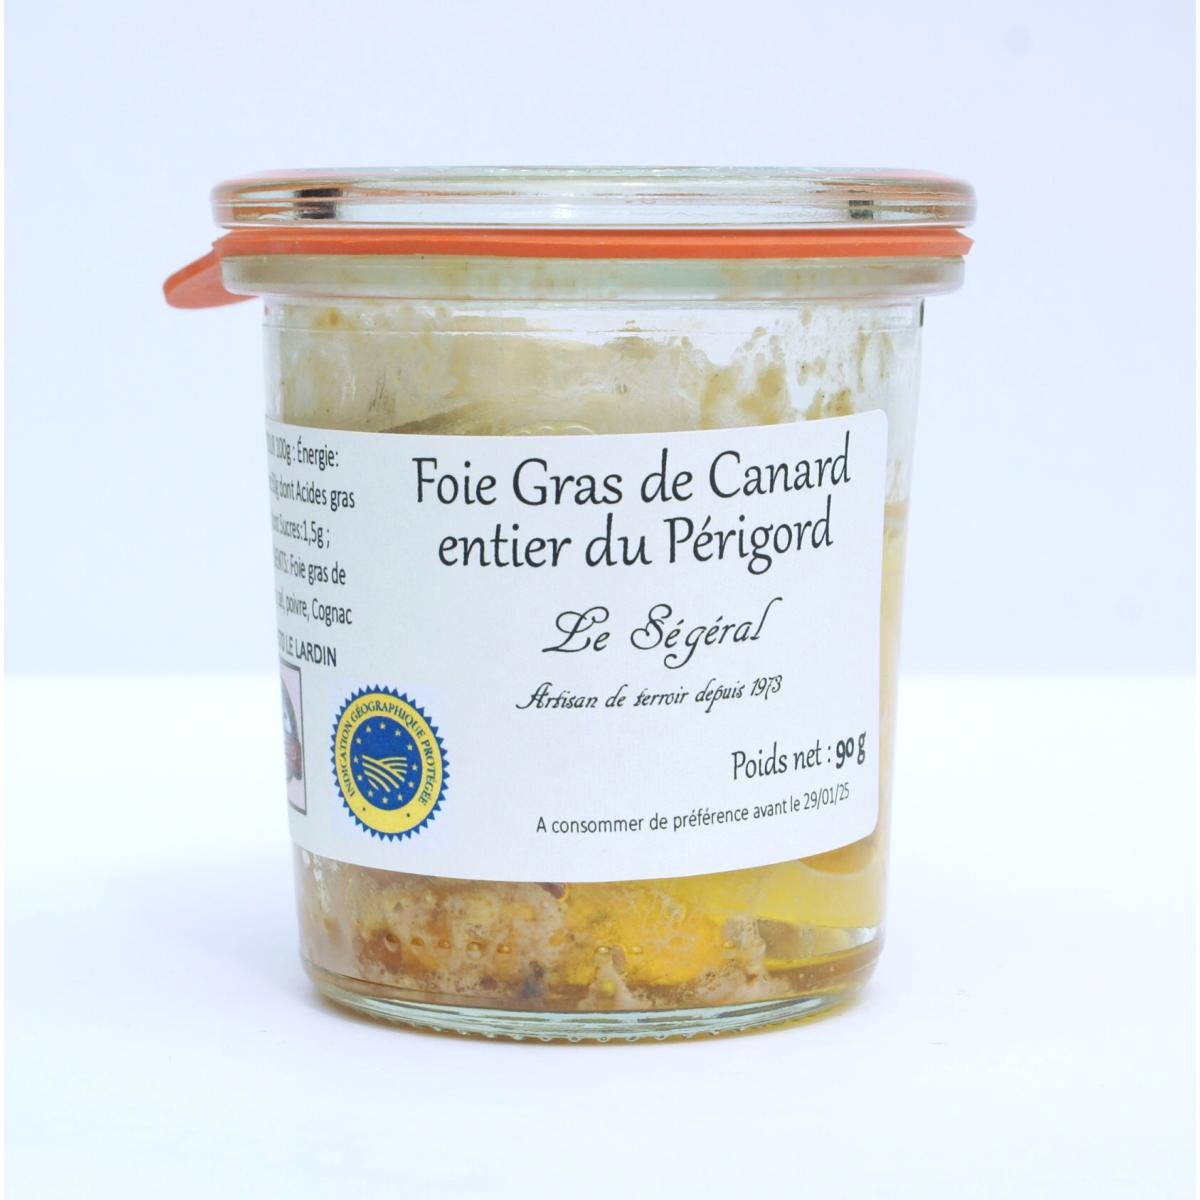 Le Foie Gras de Canard Entier Périgord, Conserve Recette à l